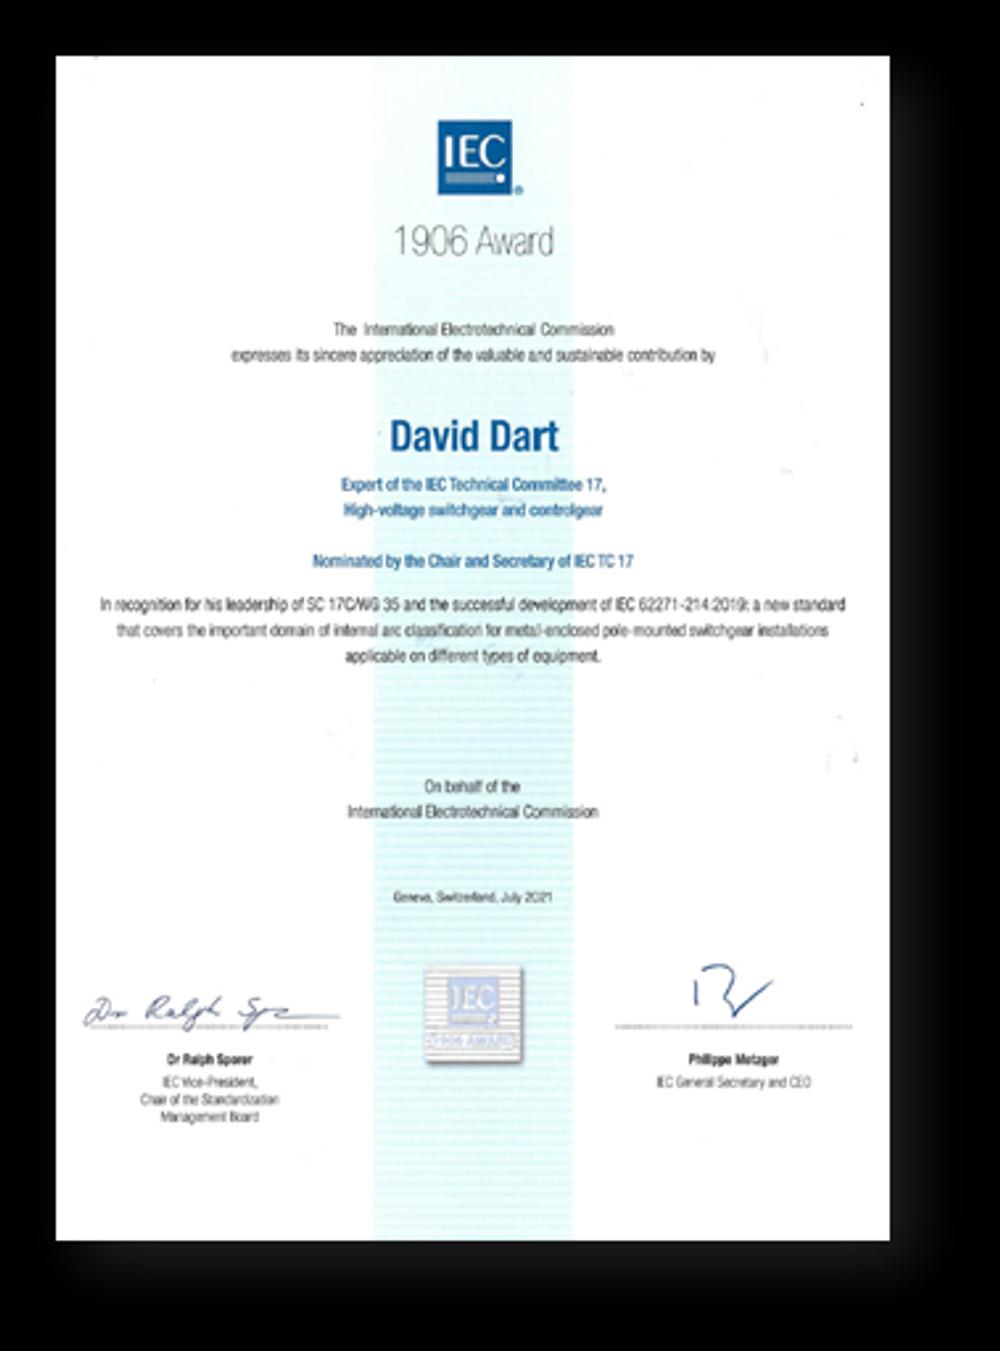 David Dart’s 1906 Award